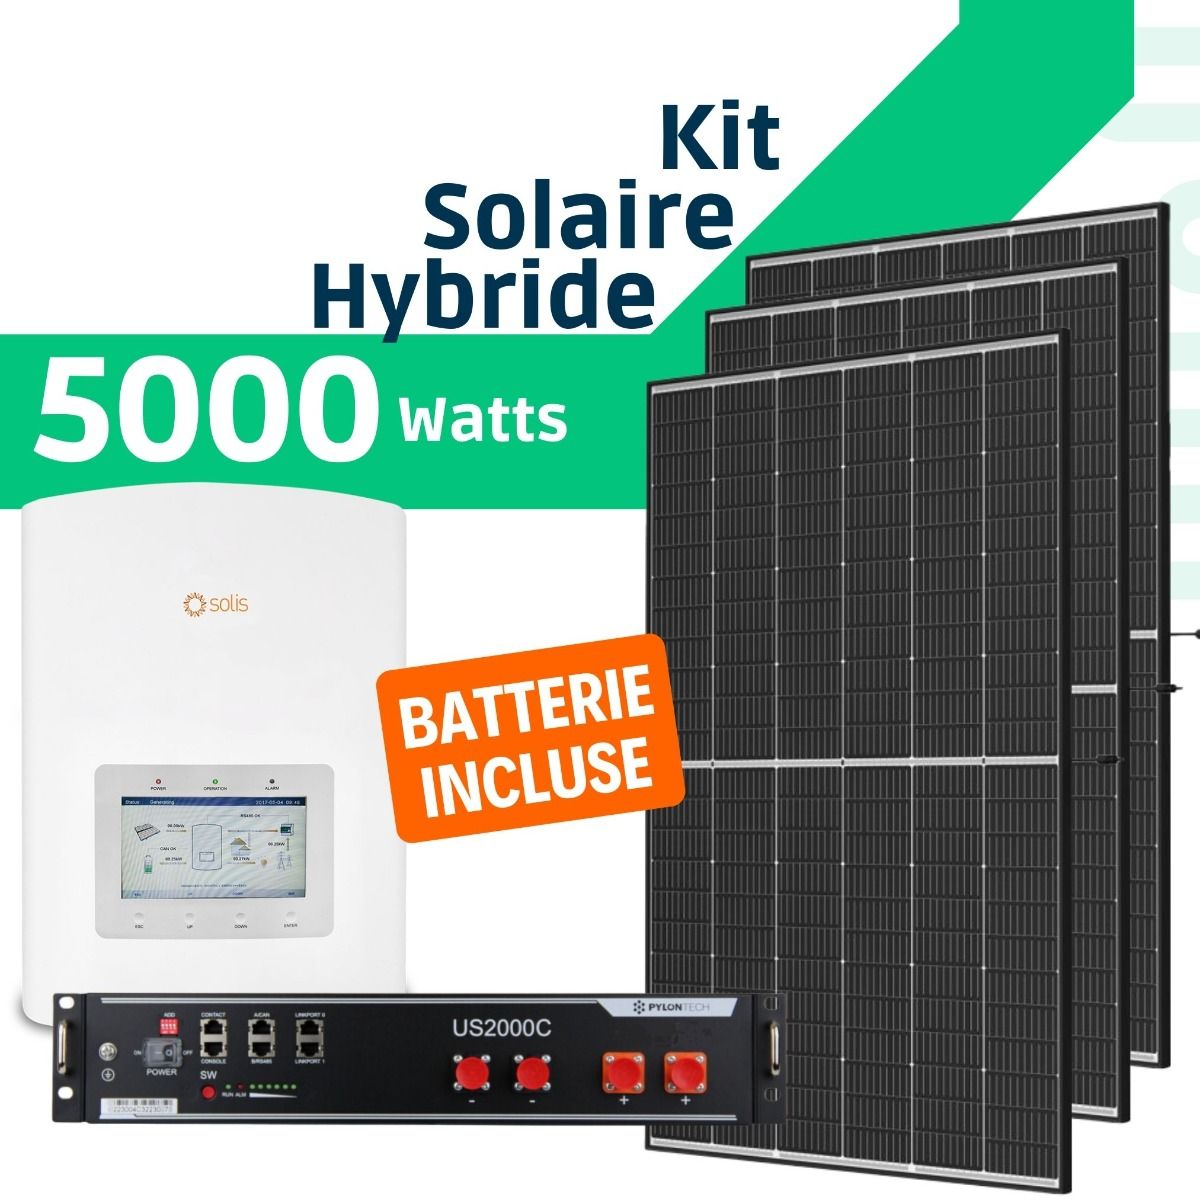 Kit Solaire Hybride complet - 5Kw Monophasé. – www.misterelec.ma